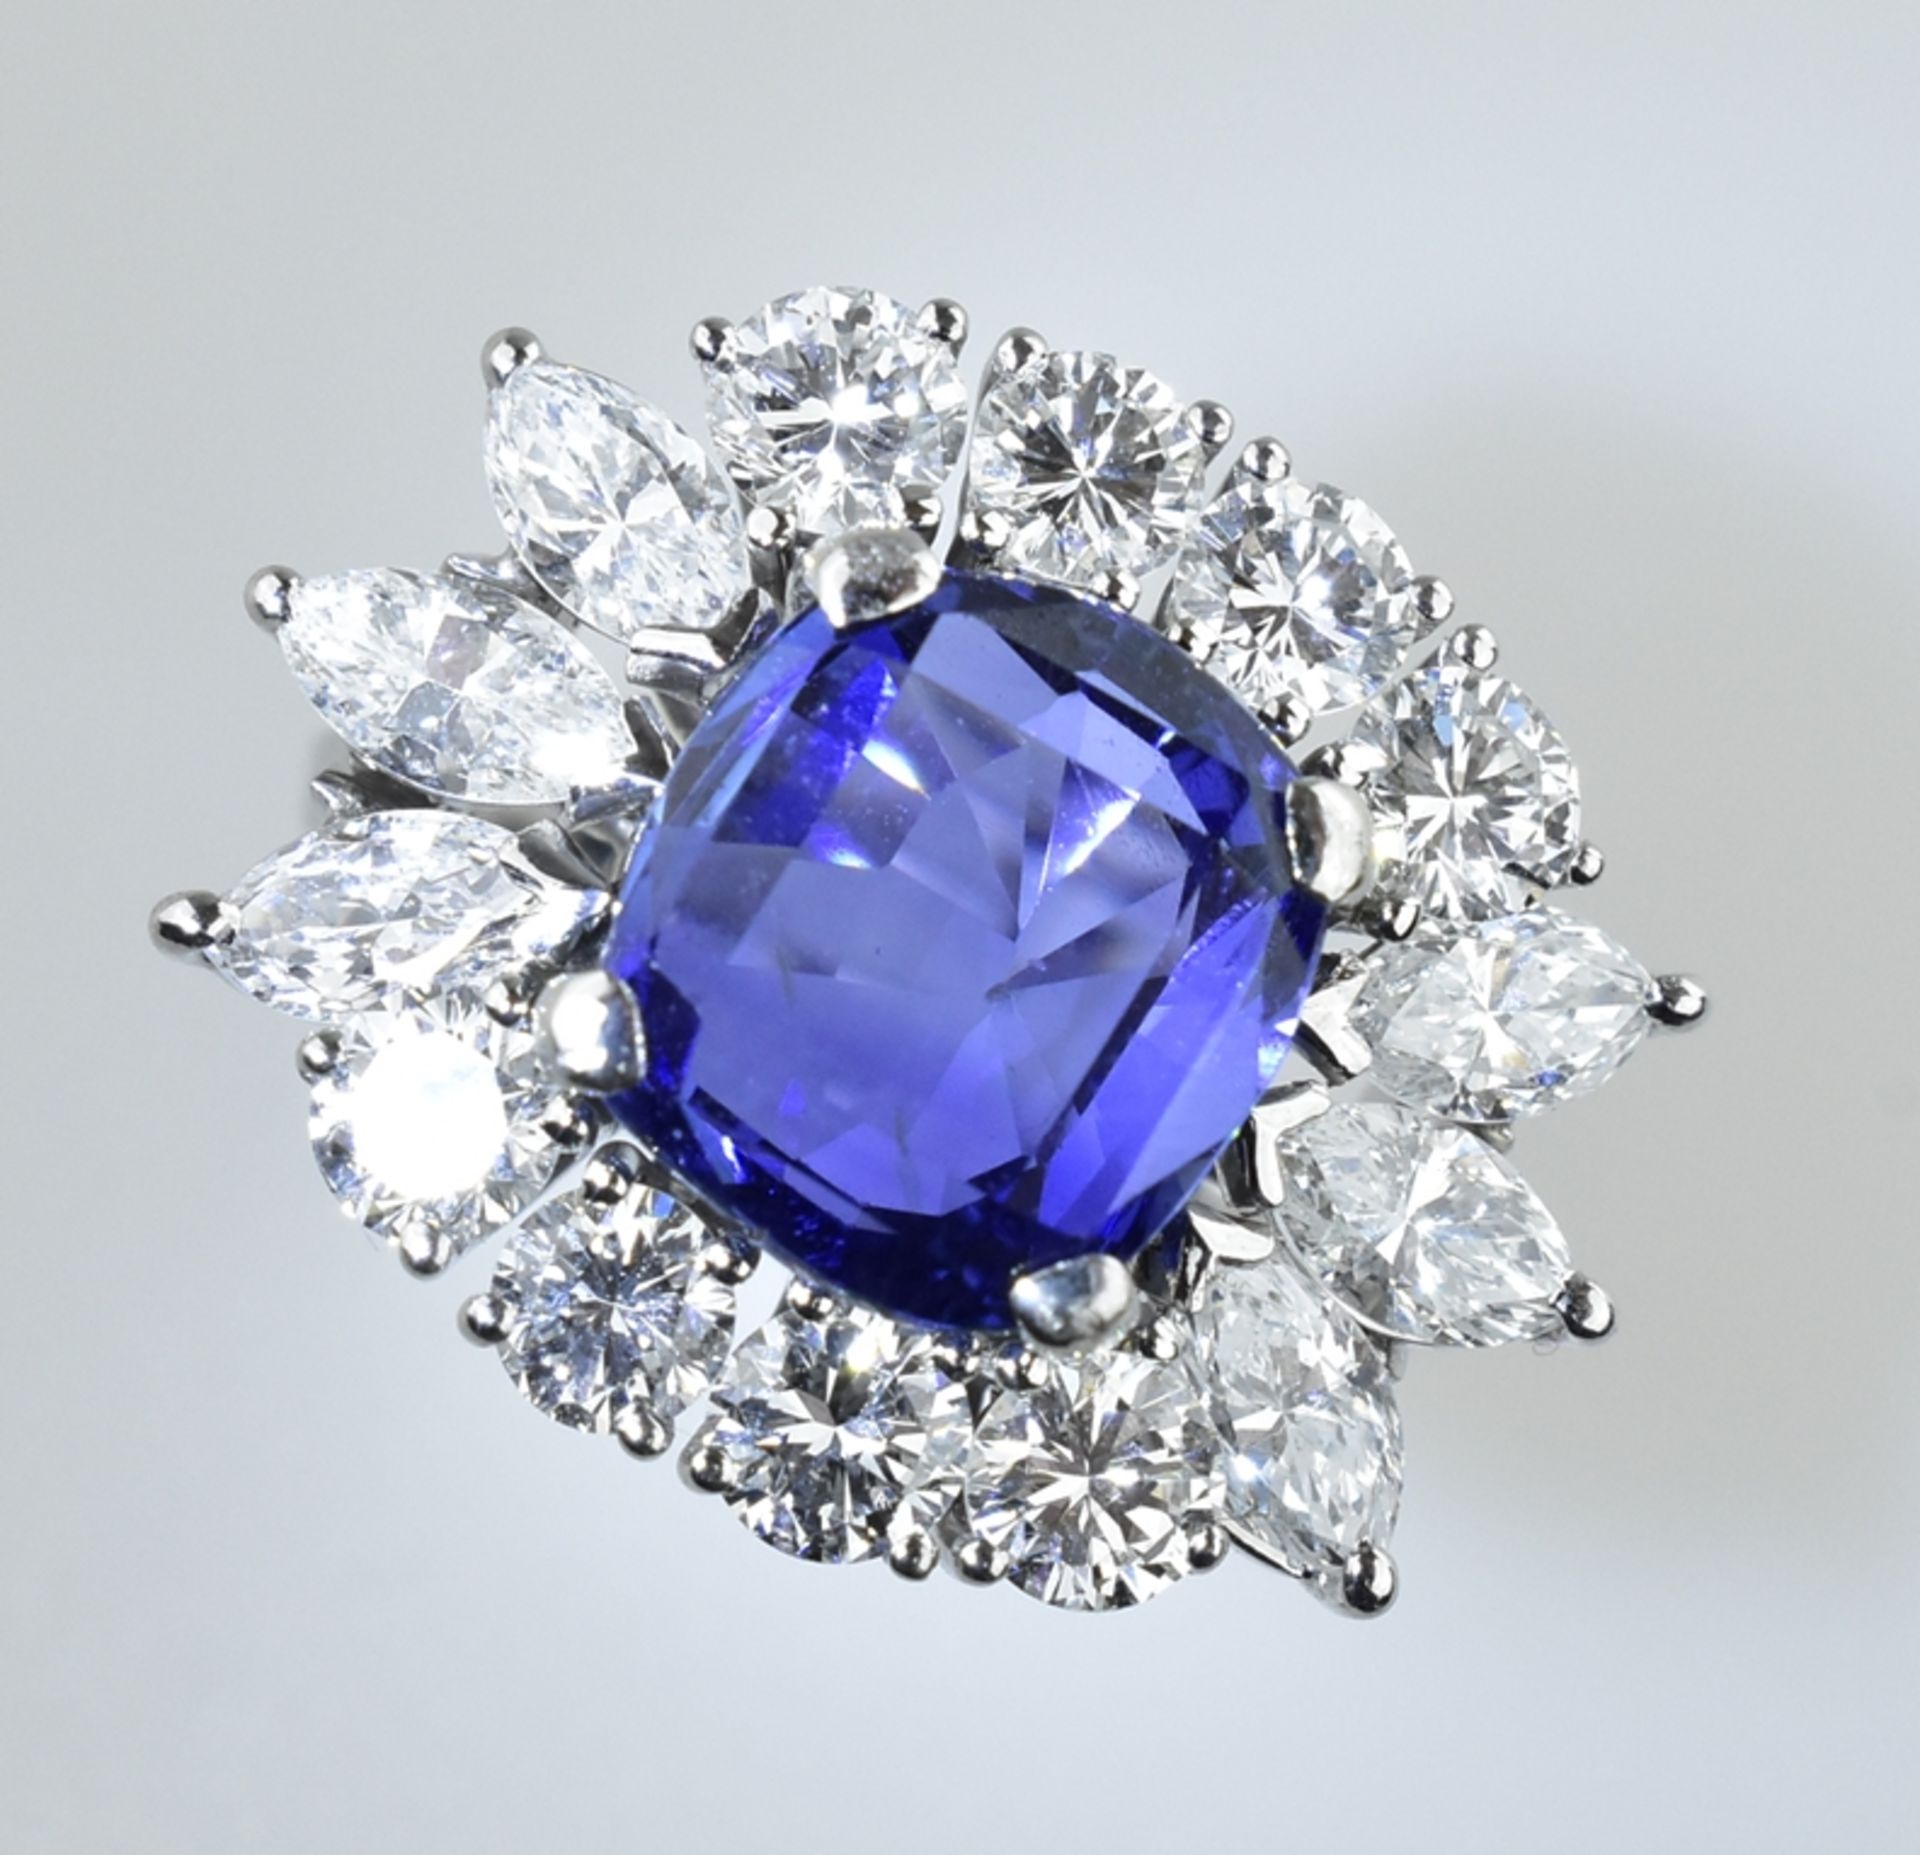 Außergewöhnlicher Ring mit Burma Saphir. Saphir von 5,94 ct. in leuchtendem Blau. Kissenschliff. Ed